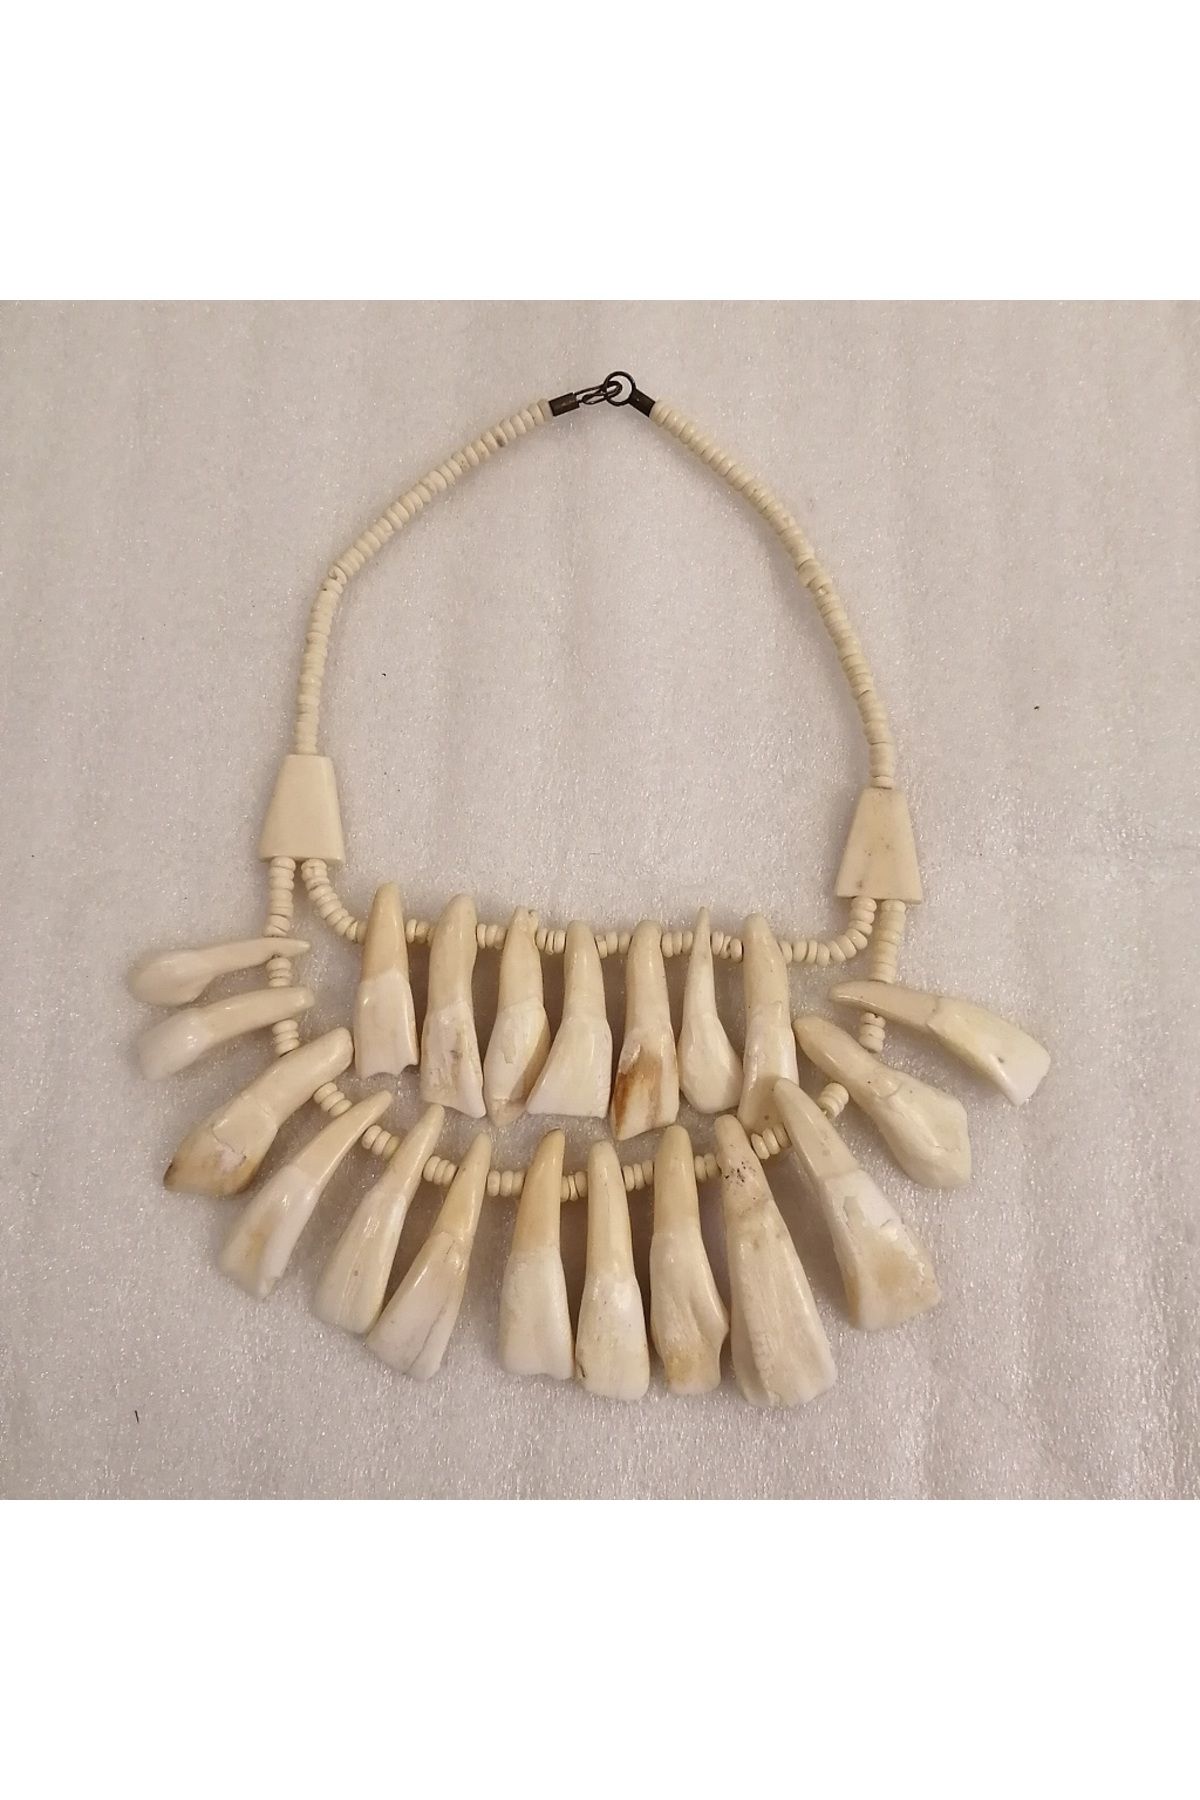 Butik Tülin Unisex otantik el yapımı hakiki deve dişi kemik rengi iki sıralı yirmi dişli ağır kolye Hint Malı